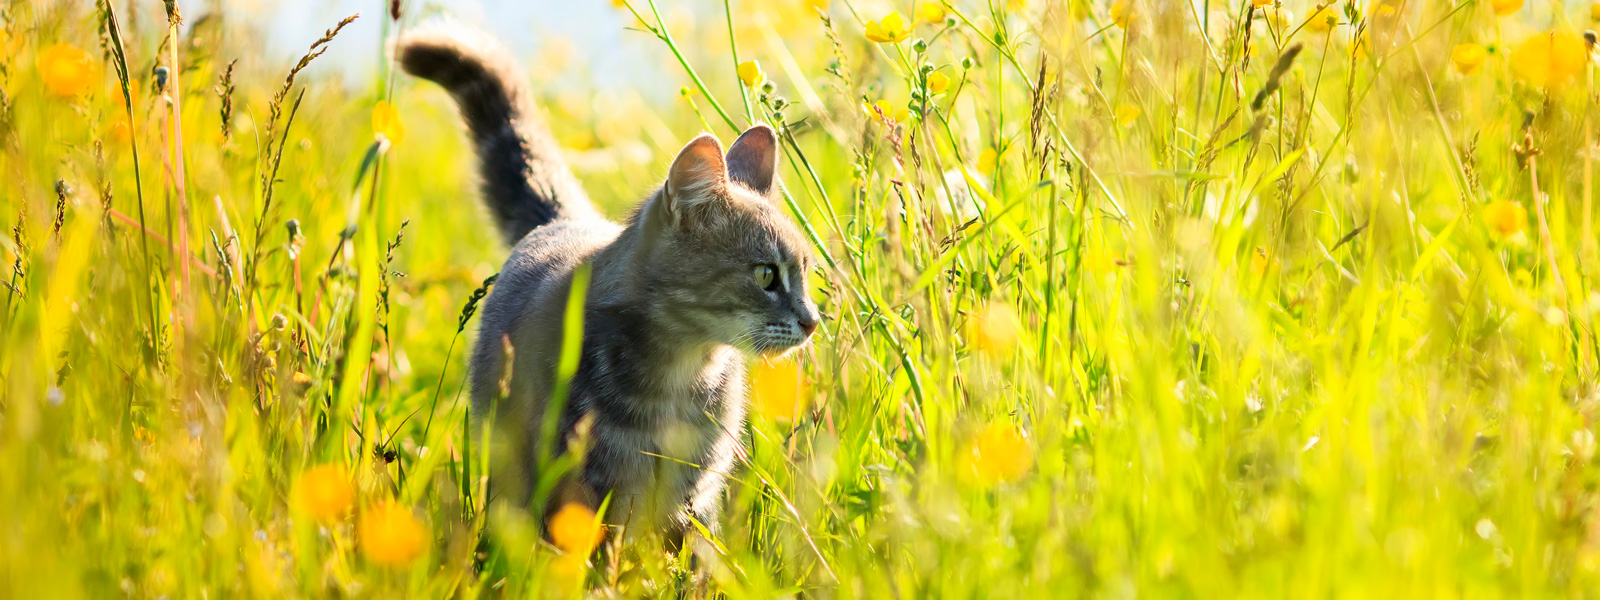 Un gato en un prado bajo un sol radiante.